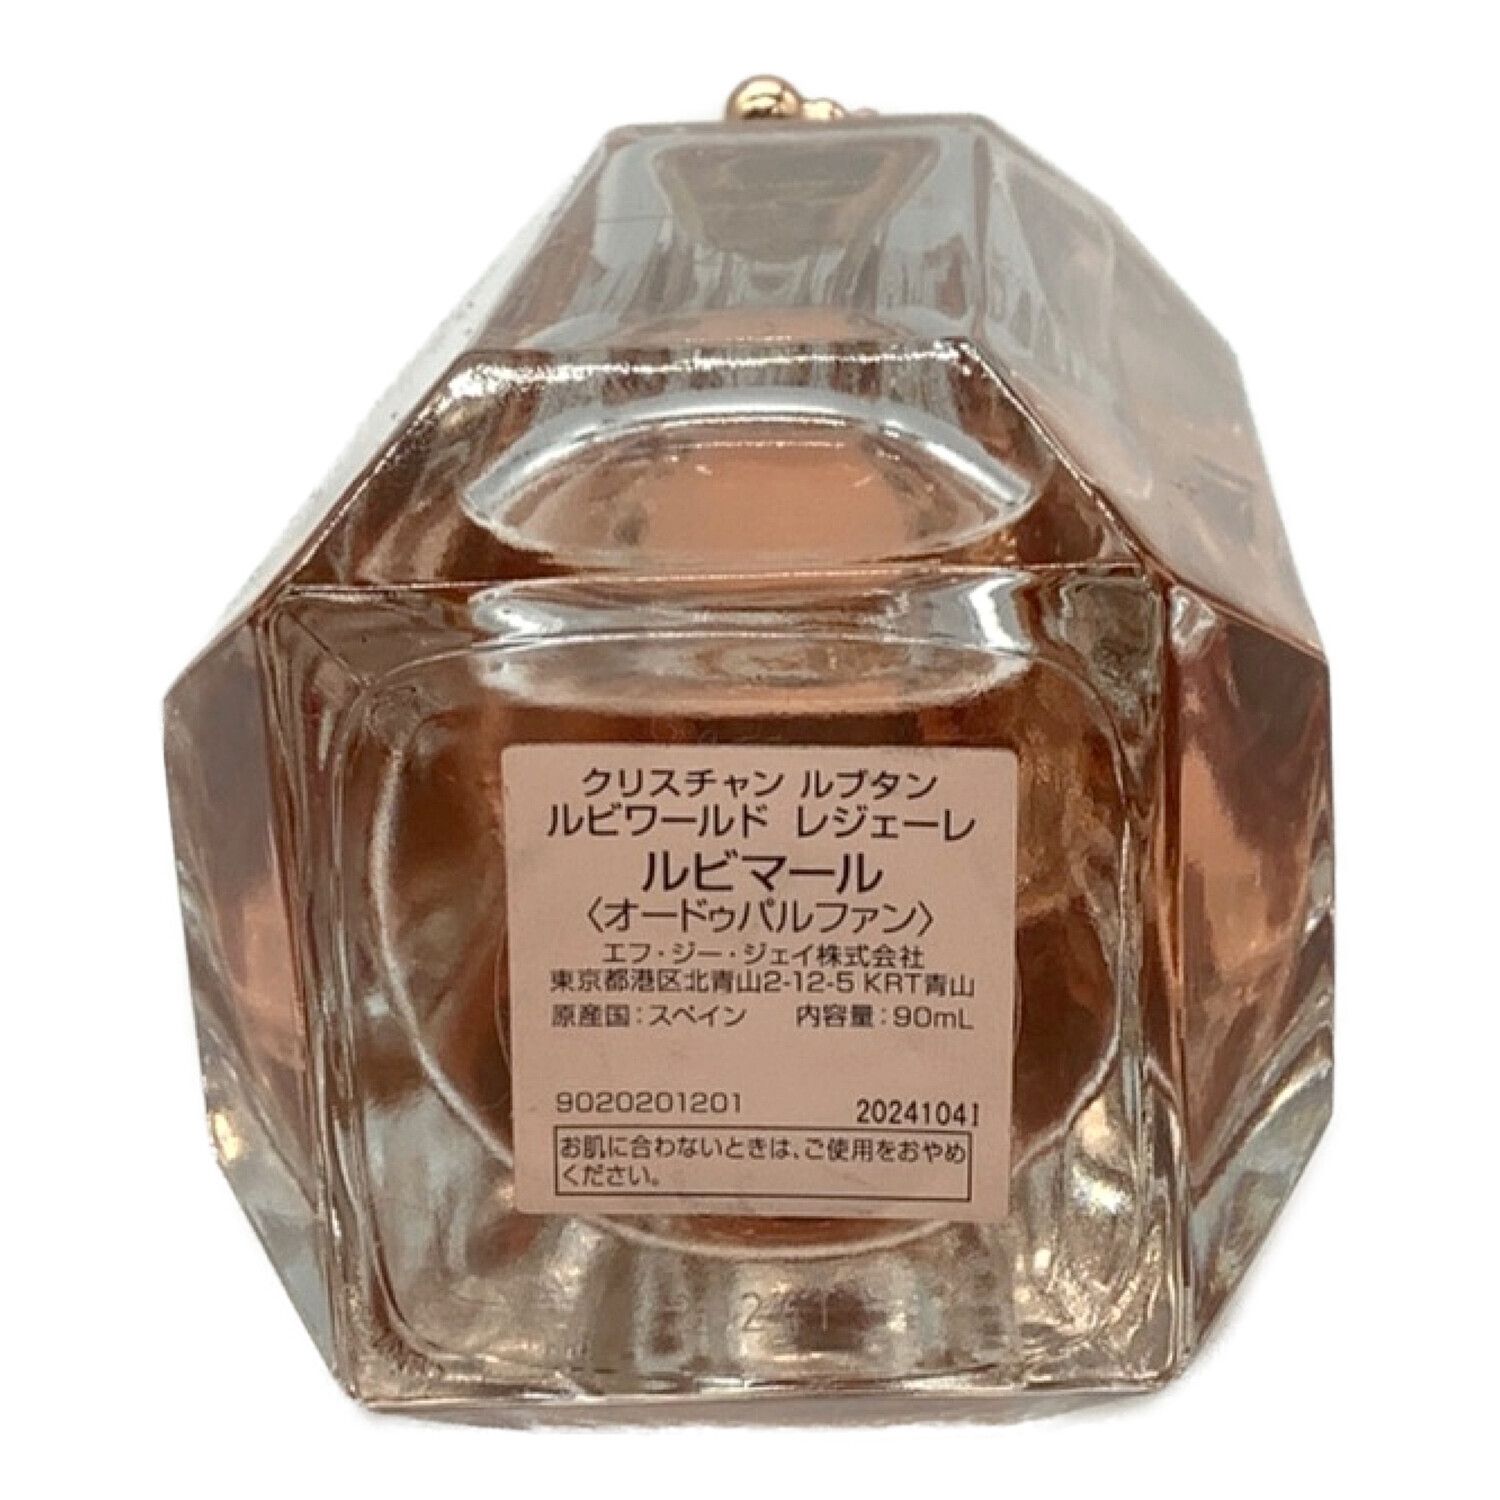 ルブタン 香水 ルビマール - 香水